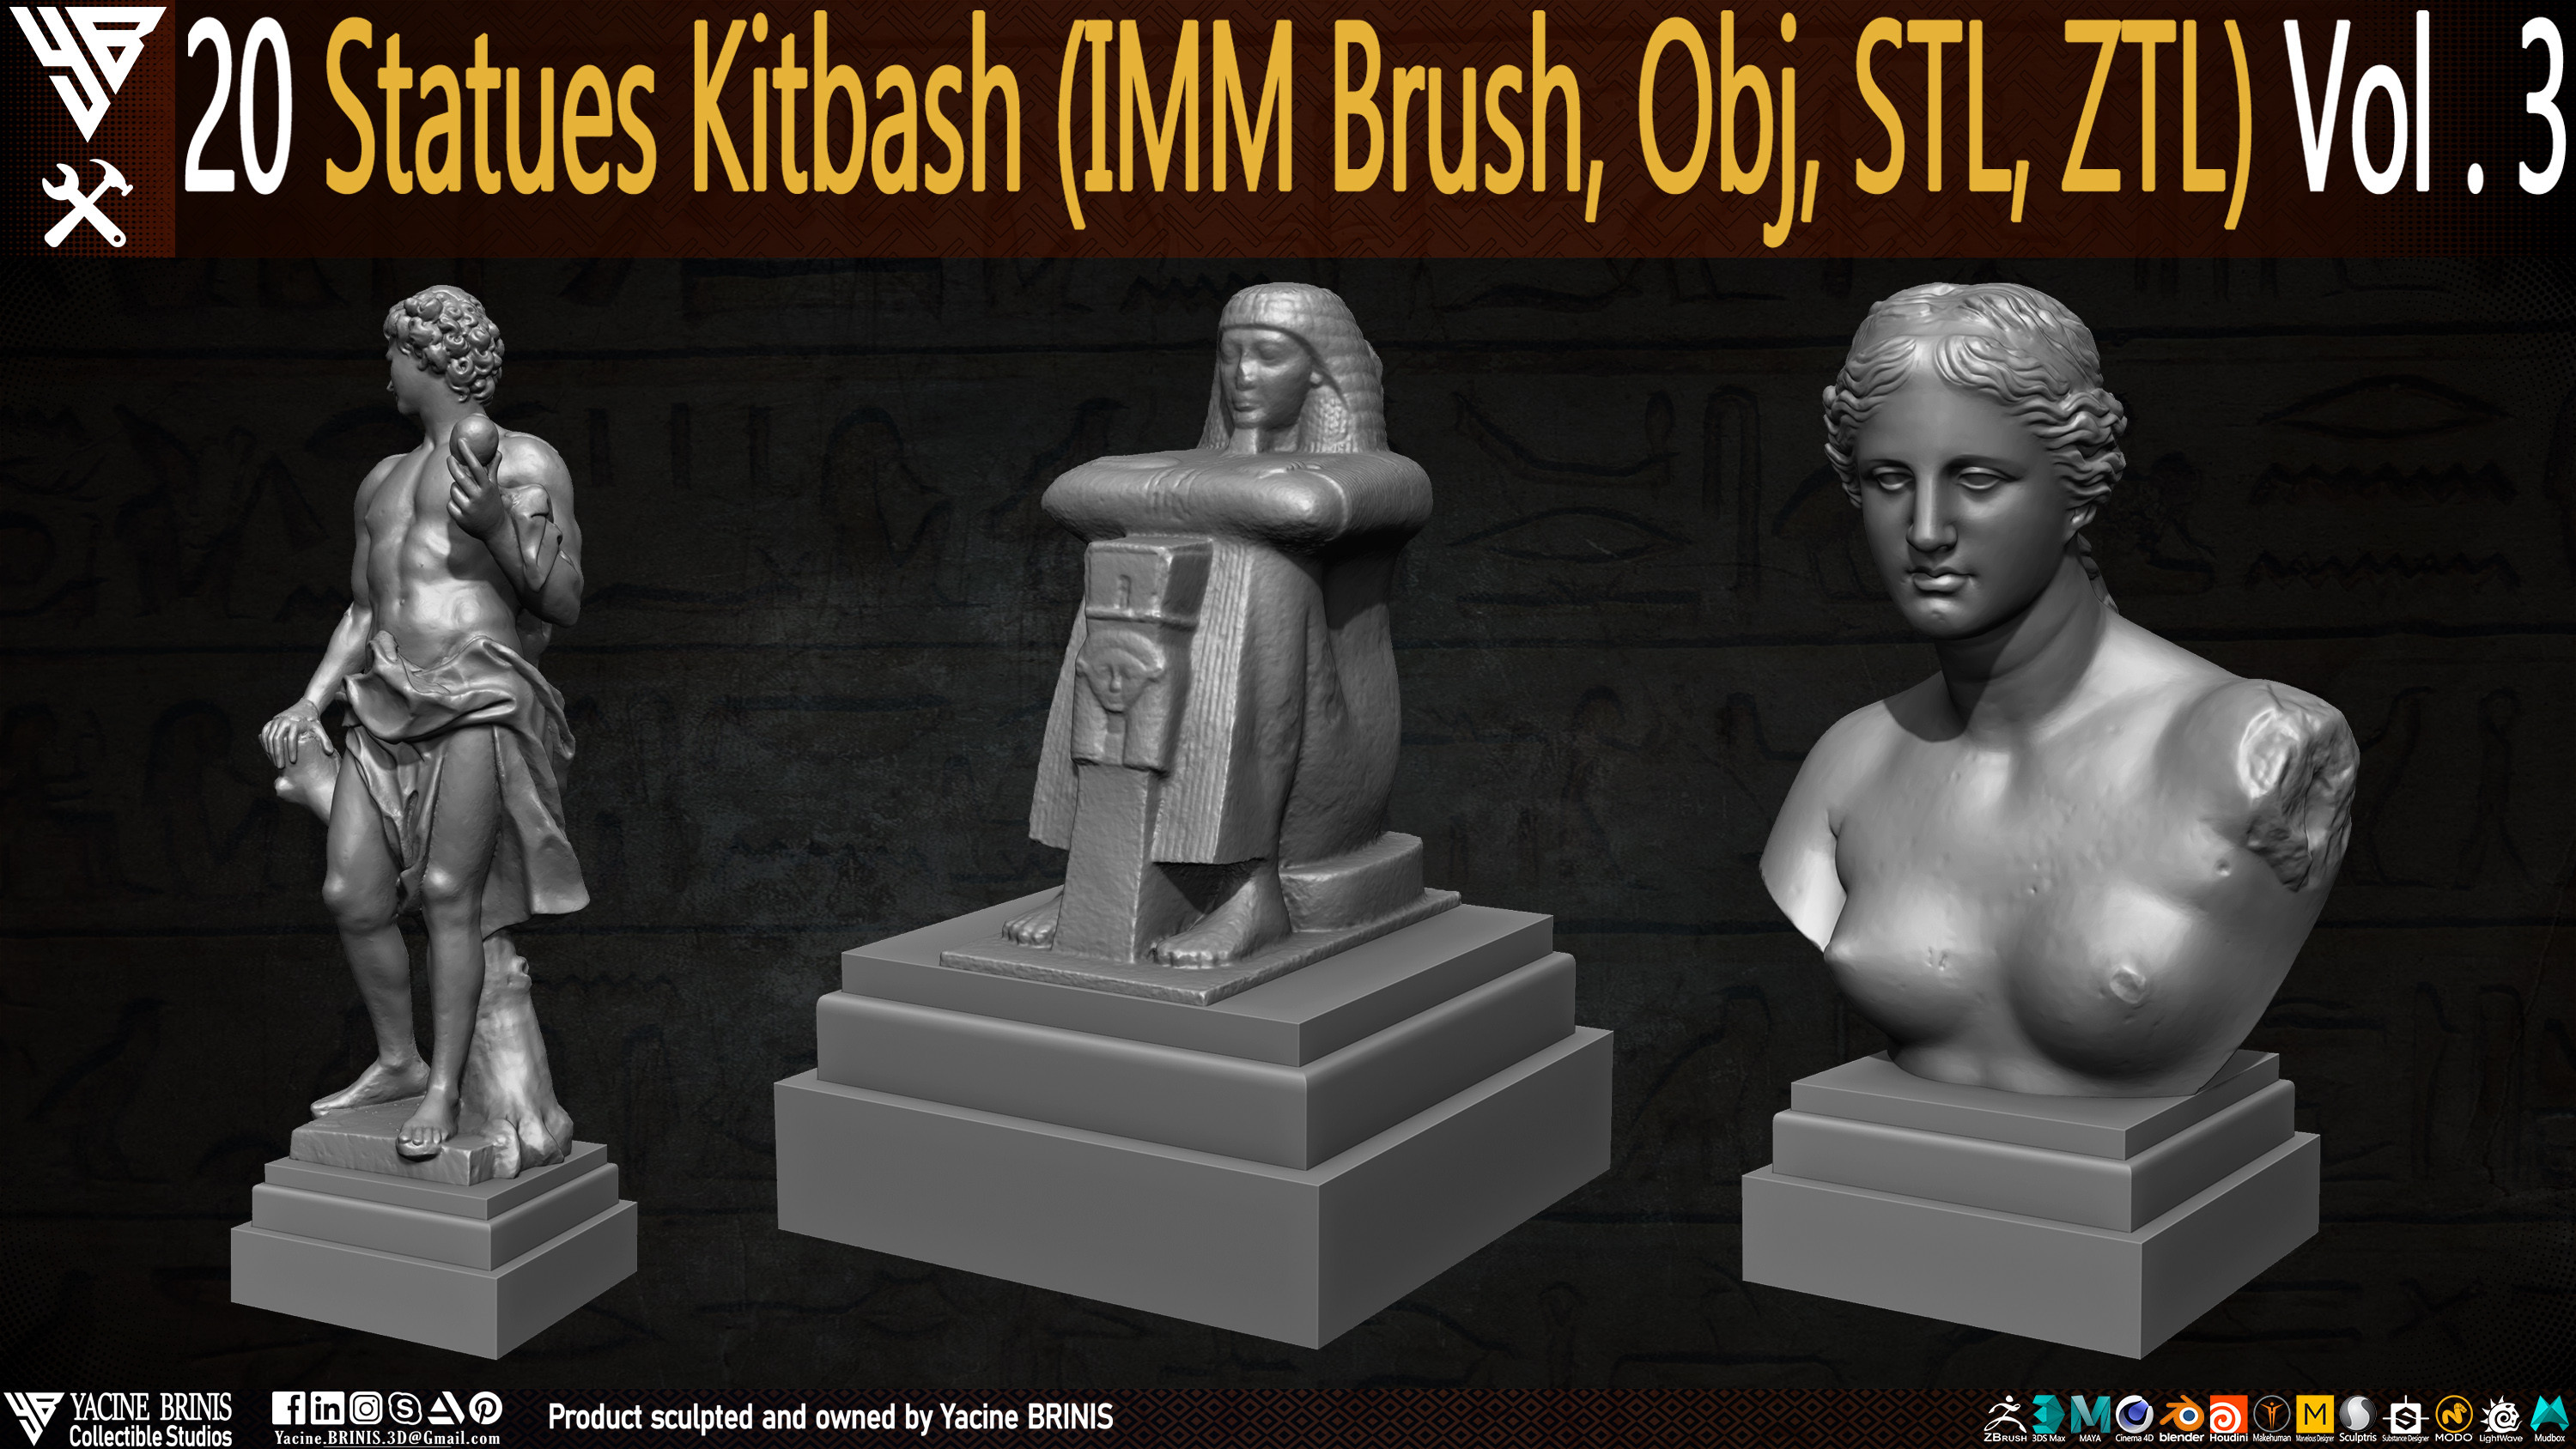 Statues Kitbash by yacine brinis Set 15